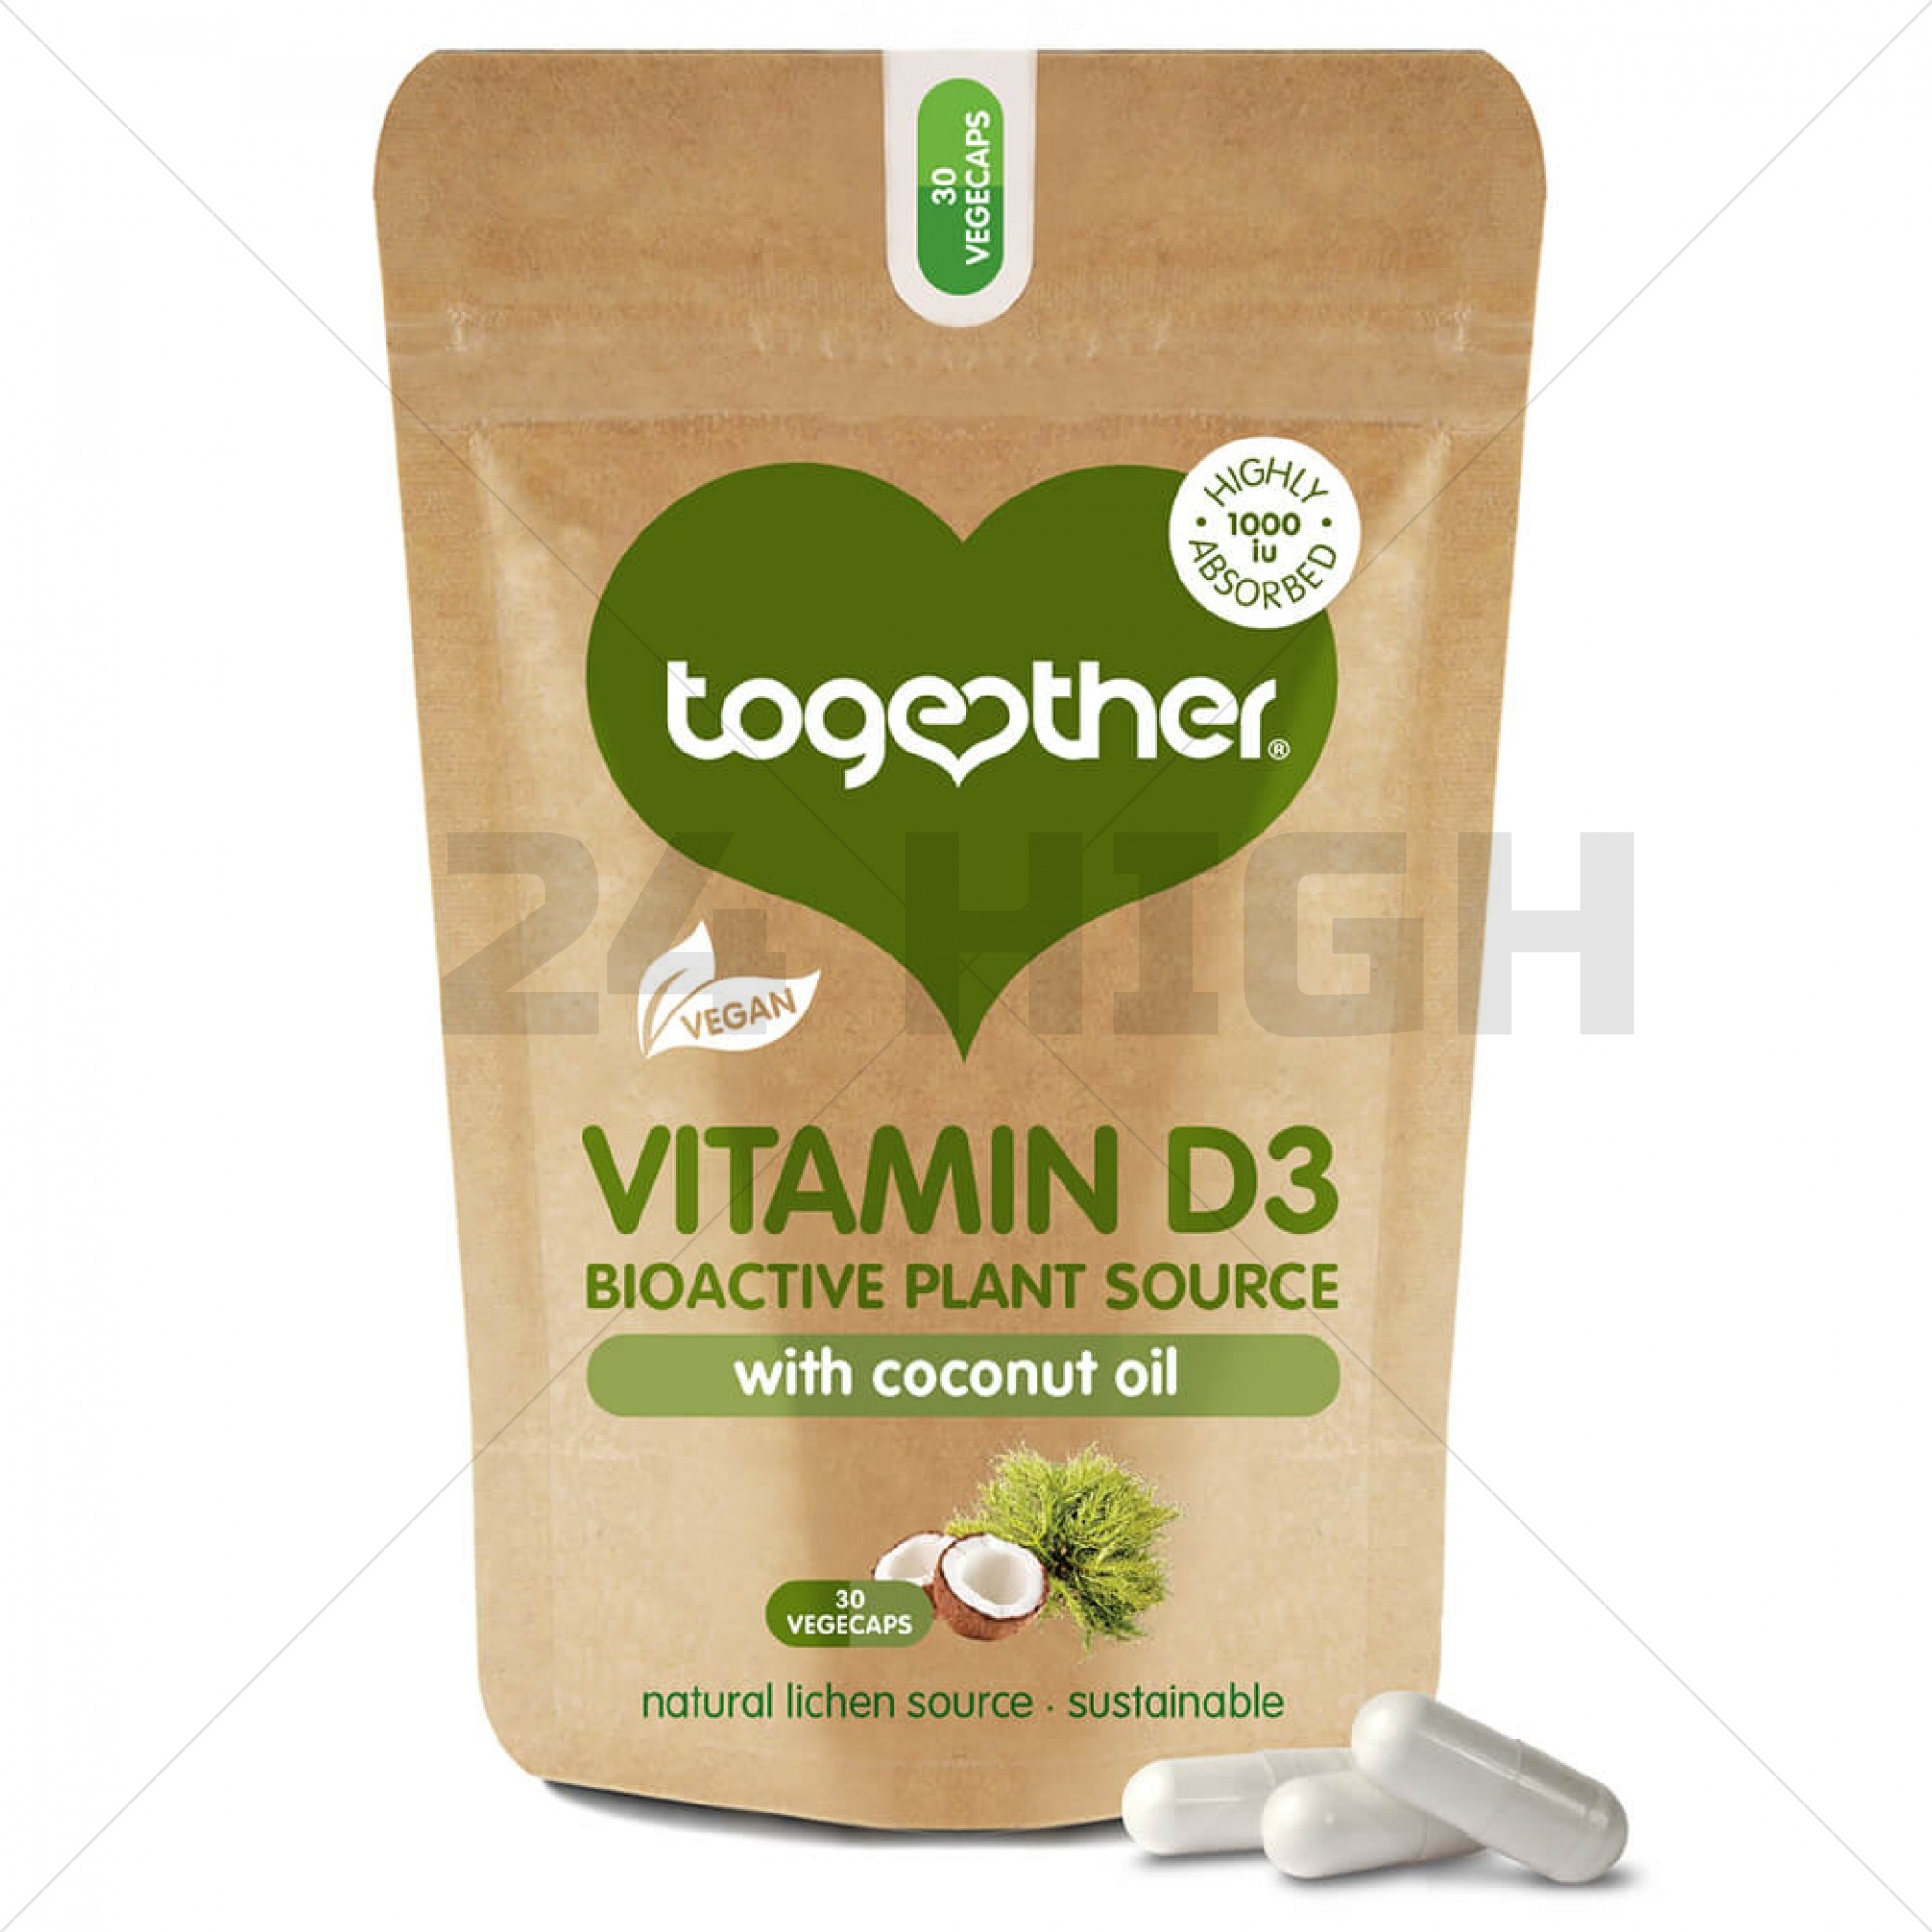 Vitamine D3 végétalienne - Together